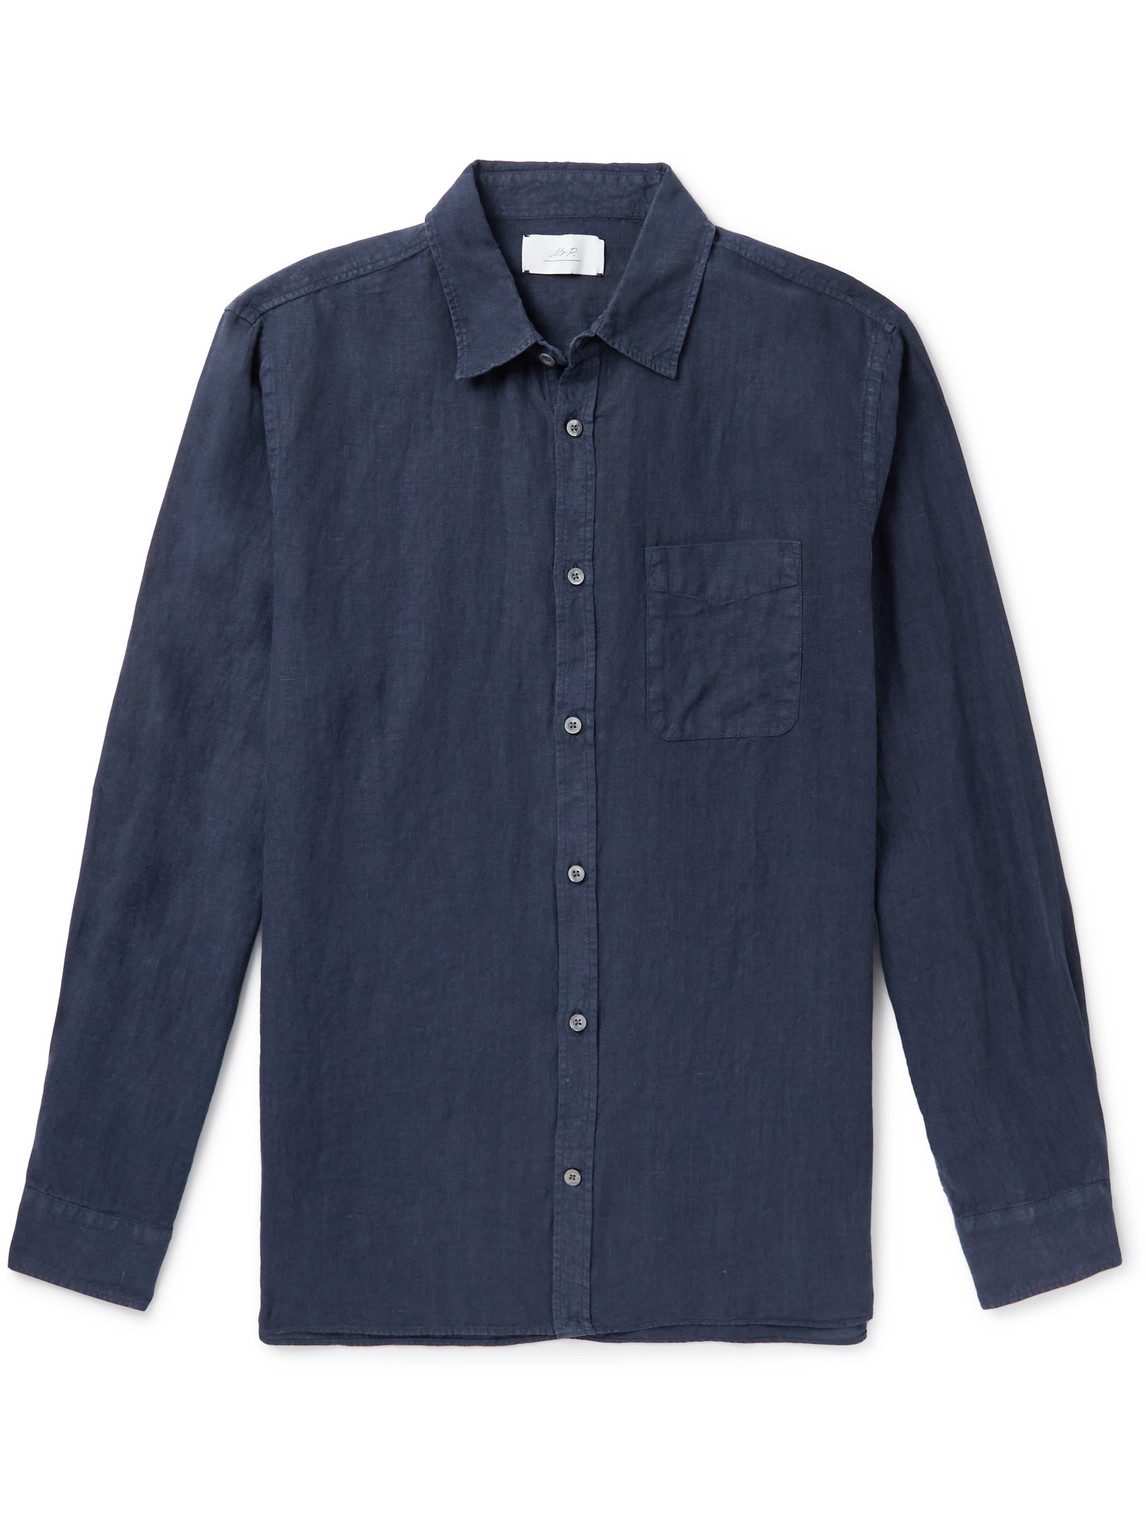 Mr P Garment-dyed Linen Shirt In Blue